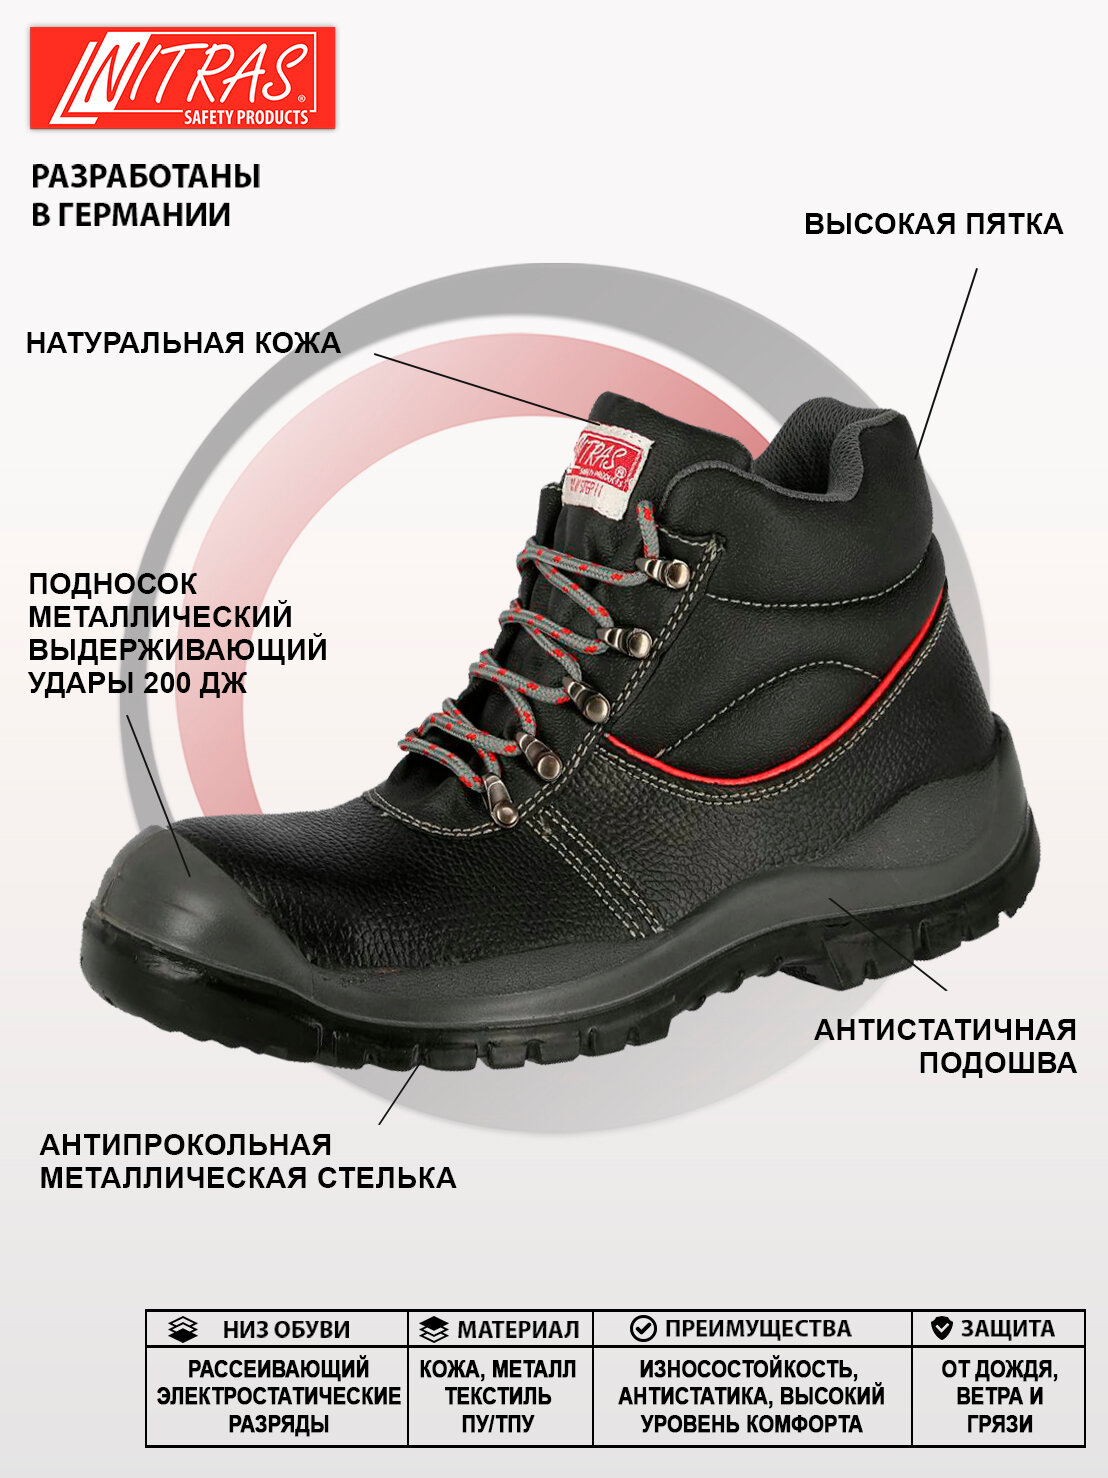 Защитные рабочие ботинки NITRAS 7201, натуральная кожа, размер 42